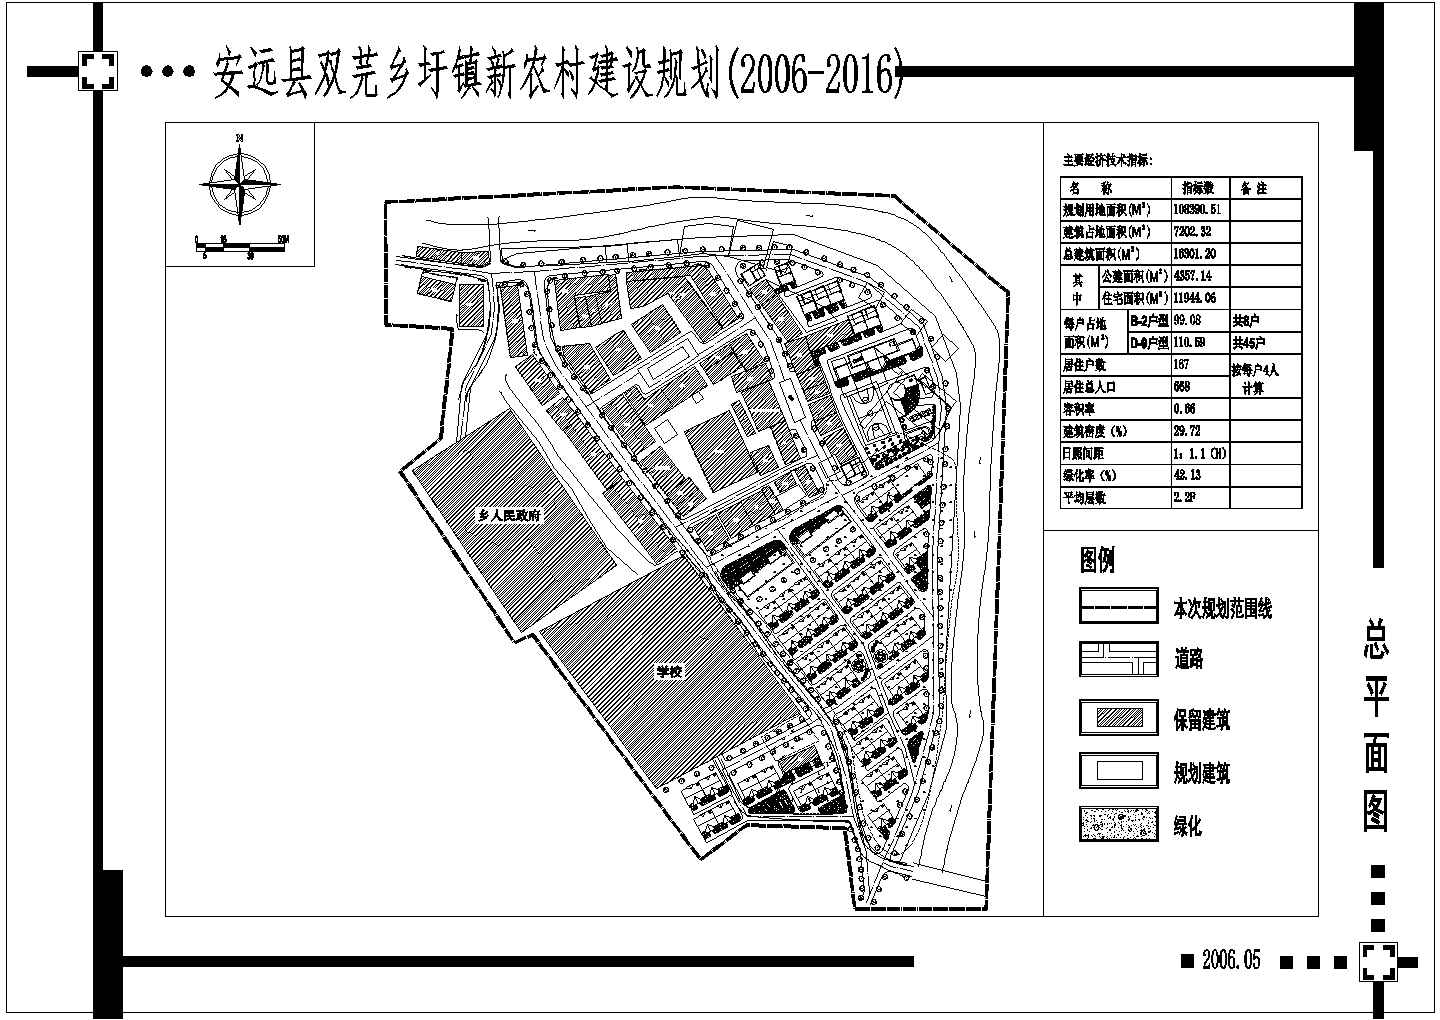 双芫圩镇总平面规划图